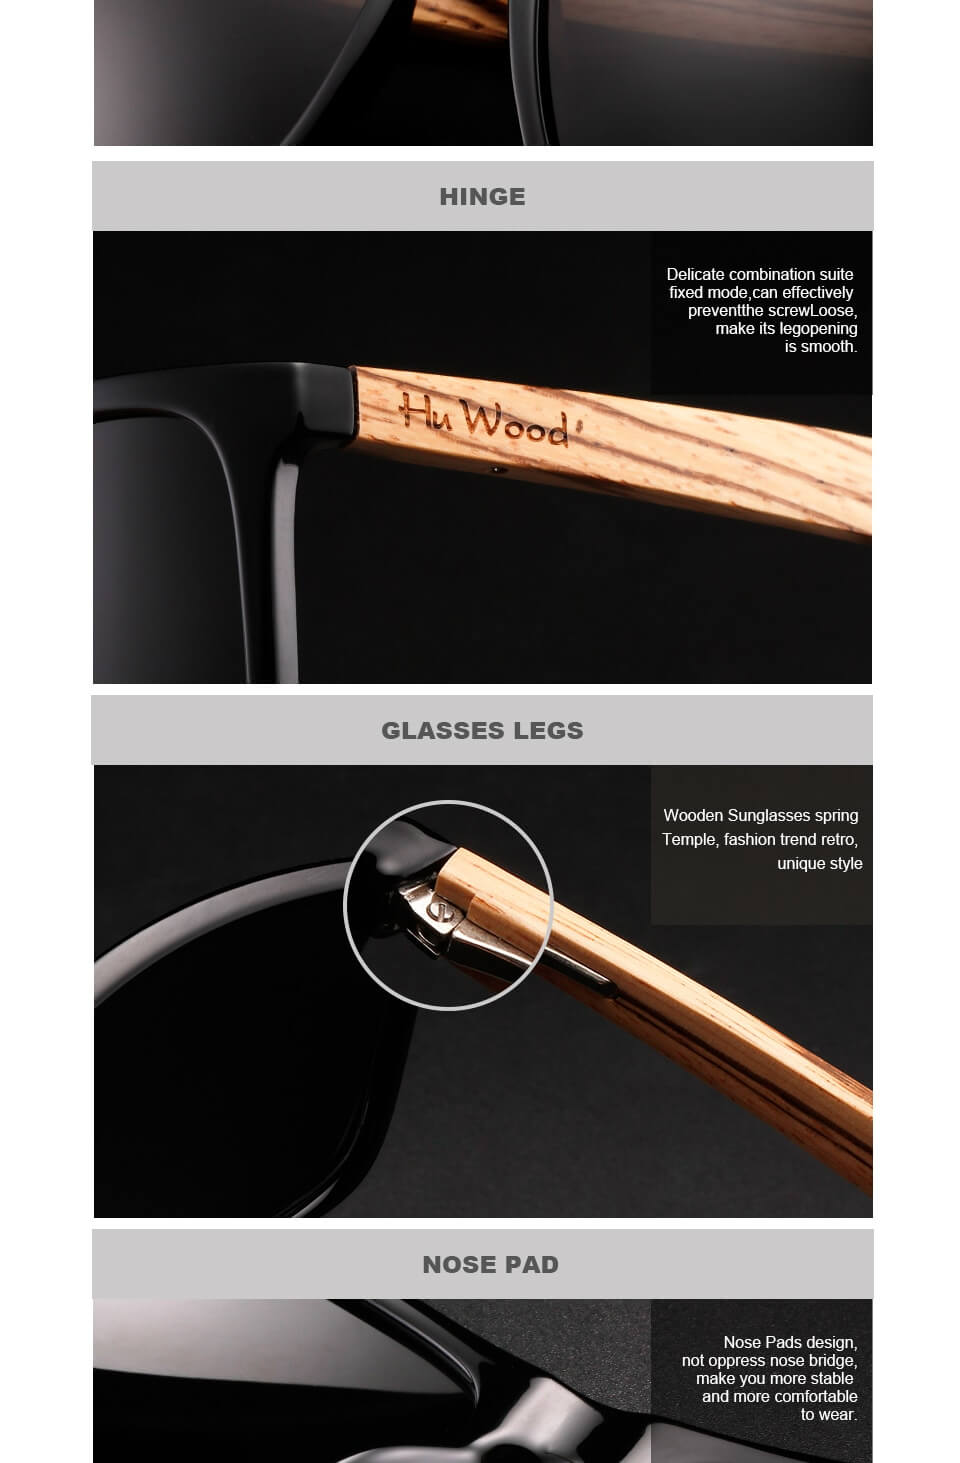 Hu gafas de sol cuadradas de madera diseño de marca UV400 para hombres gafas de sol para conducción retro gafas de sol polarizadas GR8034